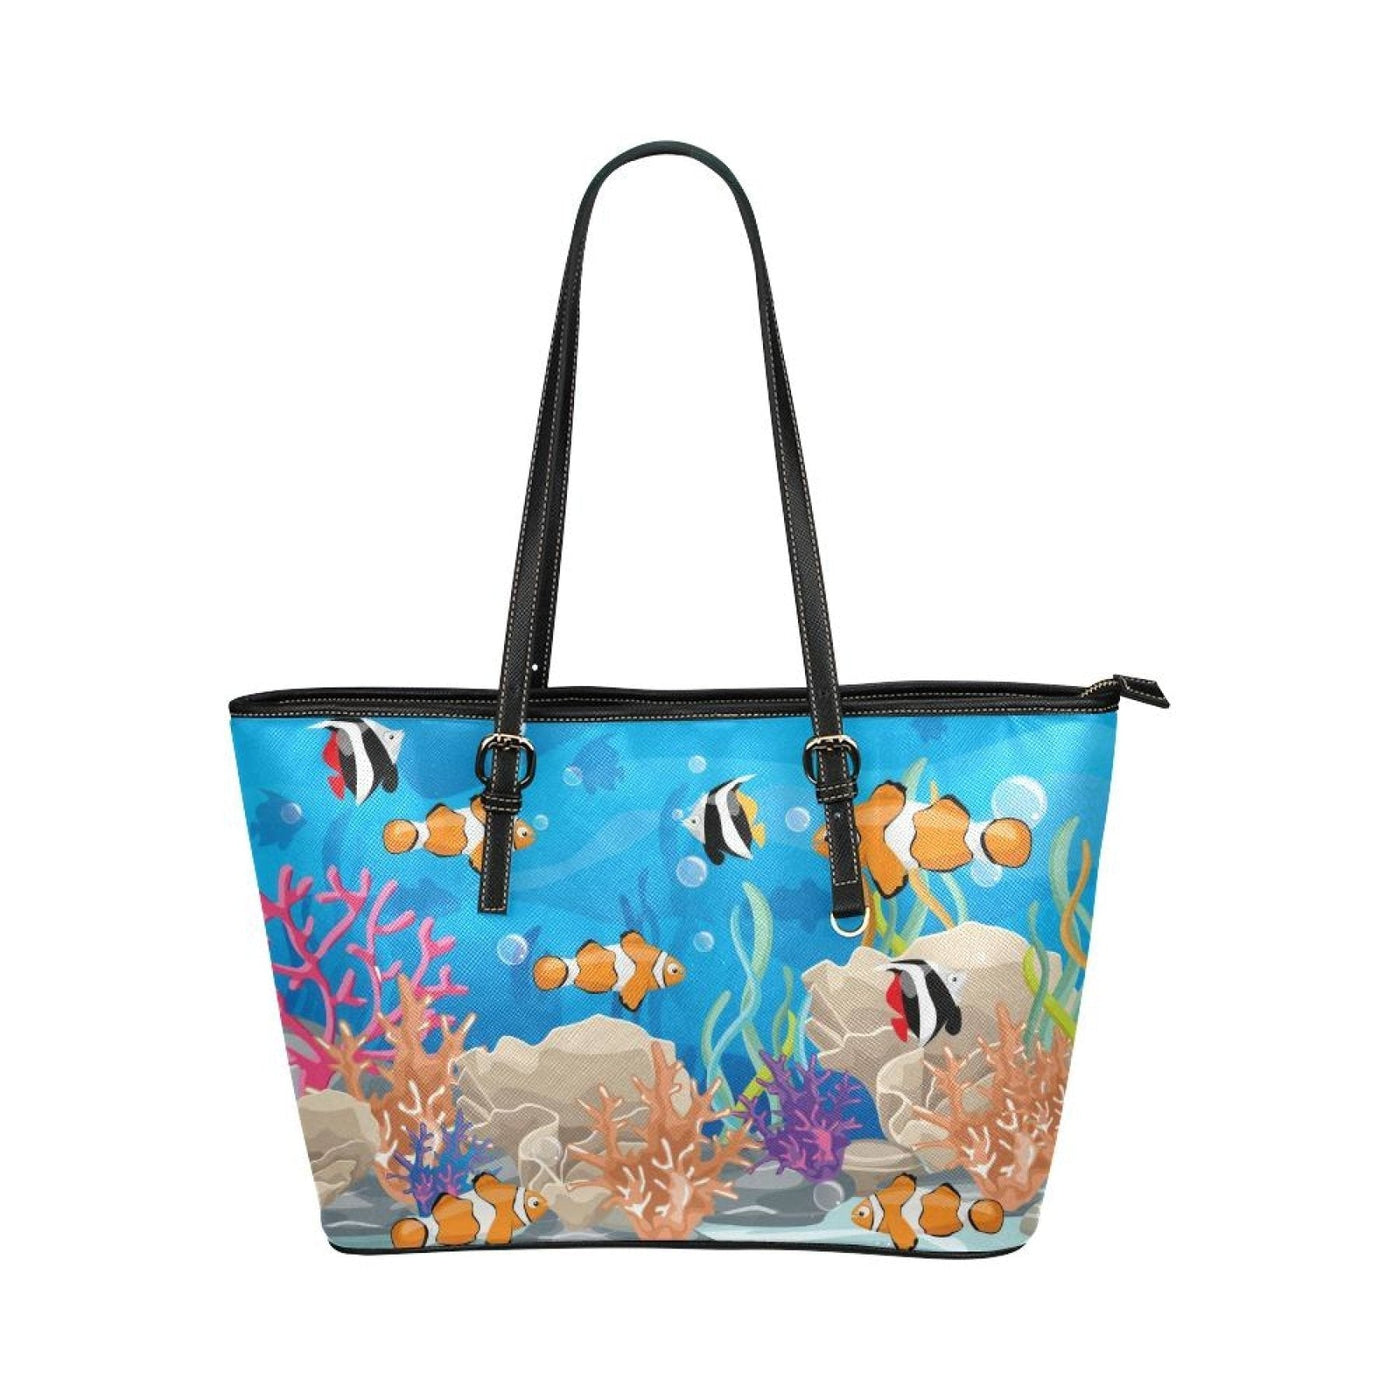 Large Leather Tote Shoulder Bag - Coral Reef Sea Life Multicolor Illustration